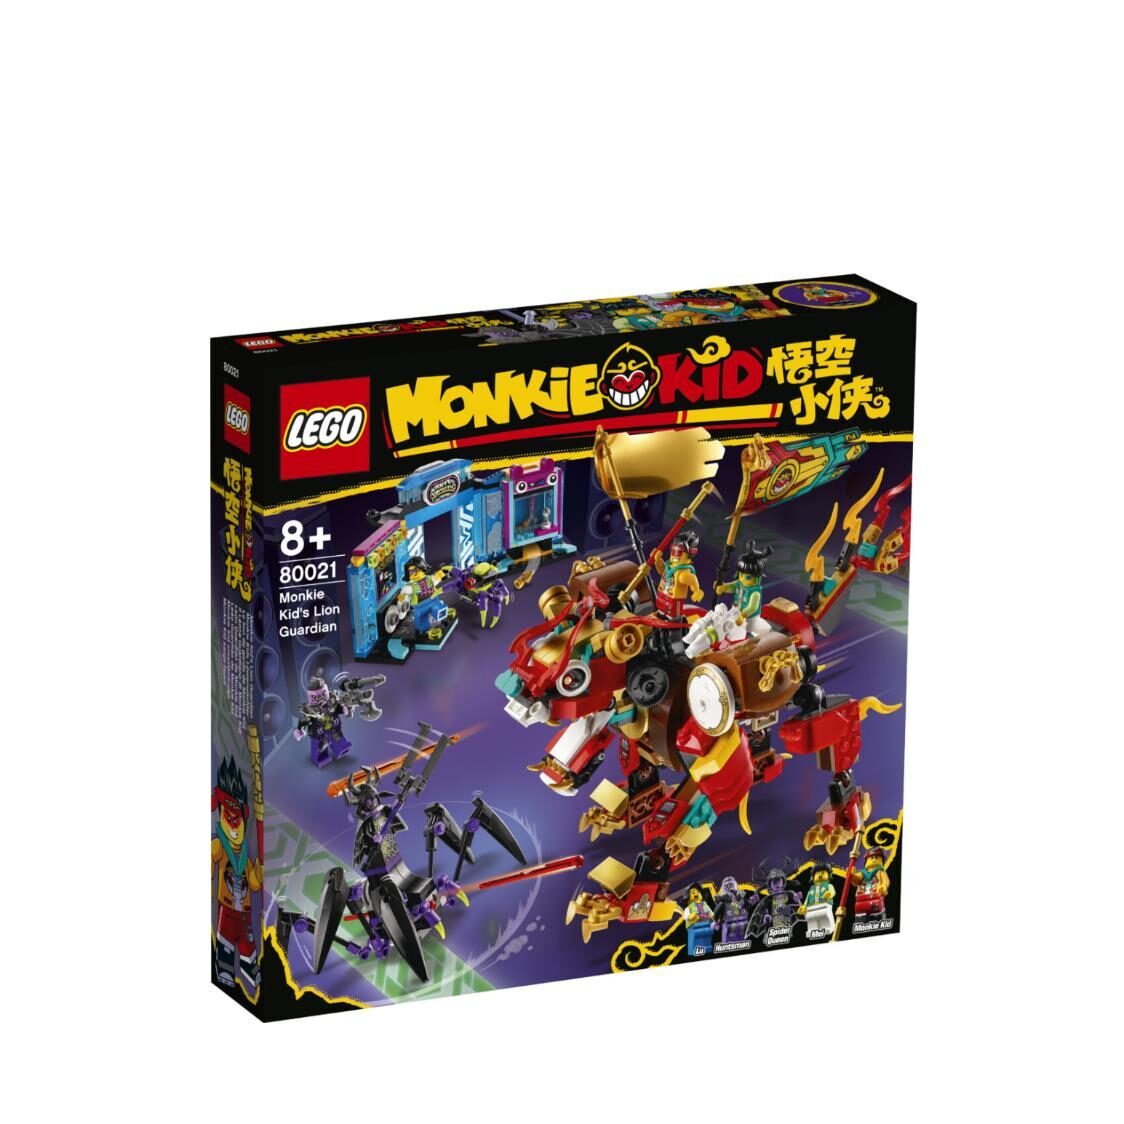 LEGO Monkie Kid - Monkie Kids Lion Guardian 80021